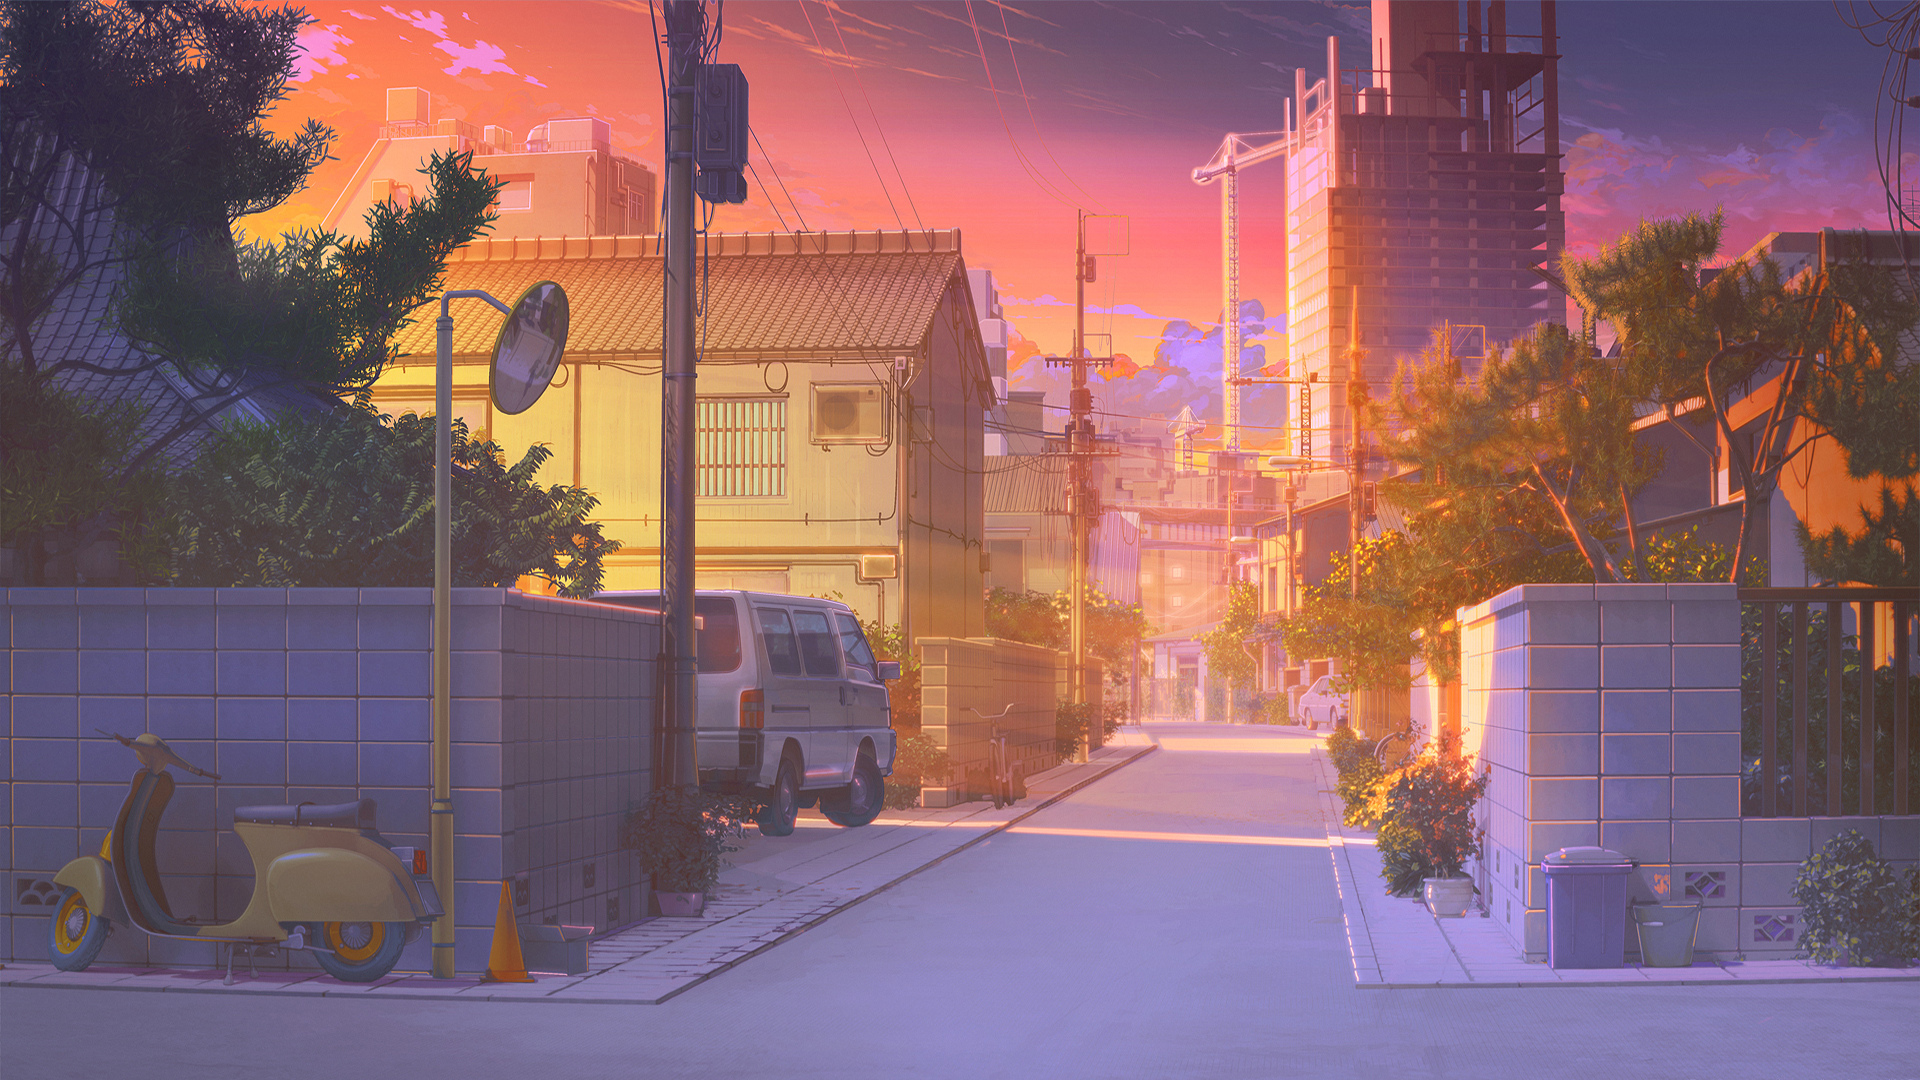 Thưởng thức hình ảnh vẻ đẹp cảnh đồ họa Anime sẽ đưa bạn đến với những thế giới tuyệt đẹp đầy khám phá và sự bất ngờ. Nếu yêu thích Anime và tầm nhìn lãng mạn, hãy xem ngay hình ảnh Anime landscape nào!